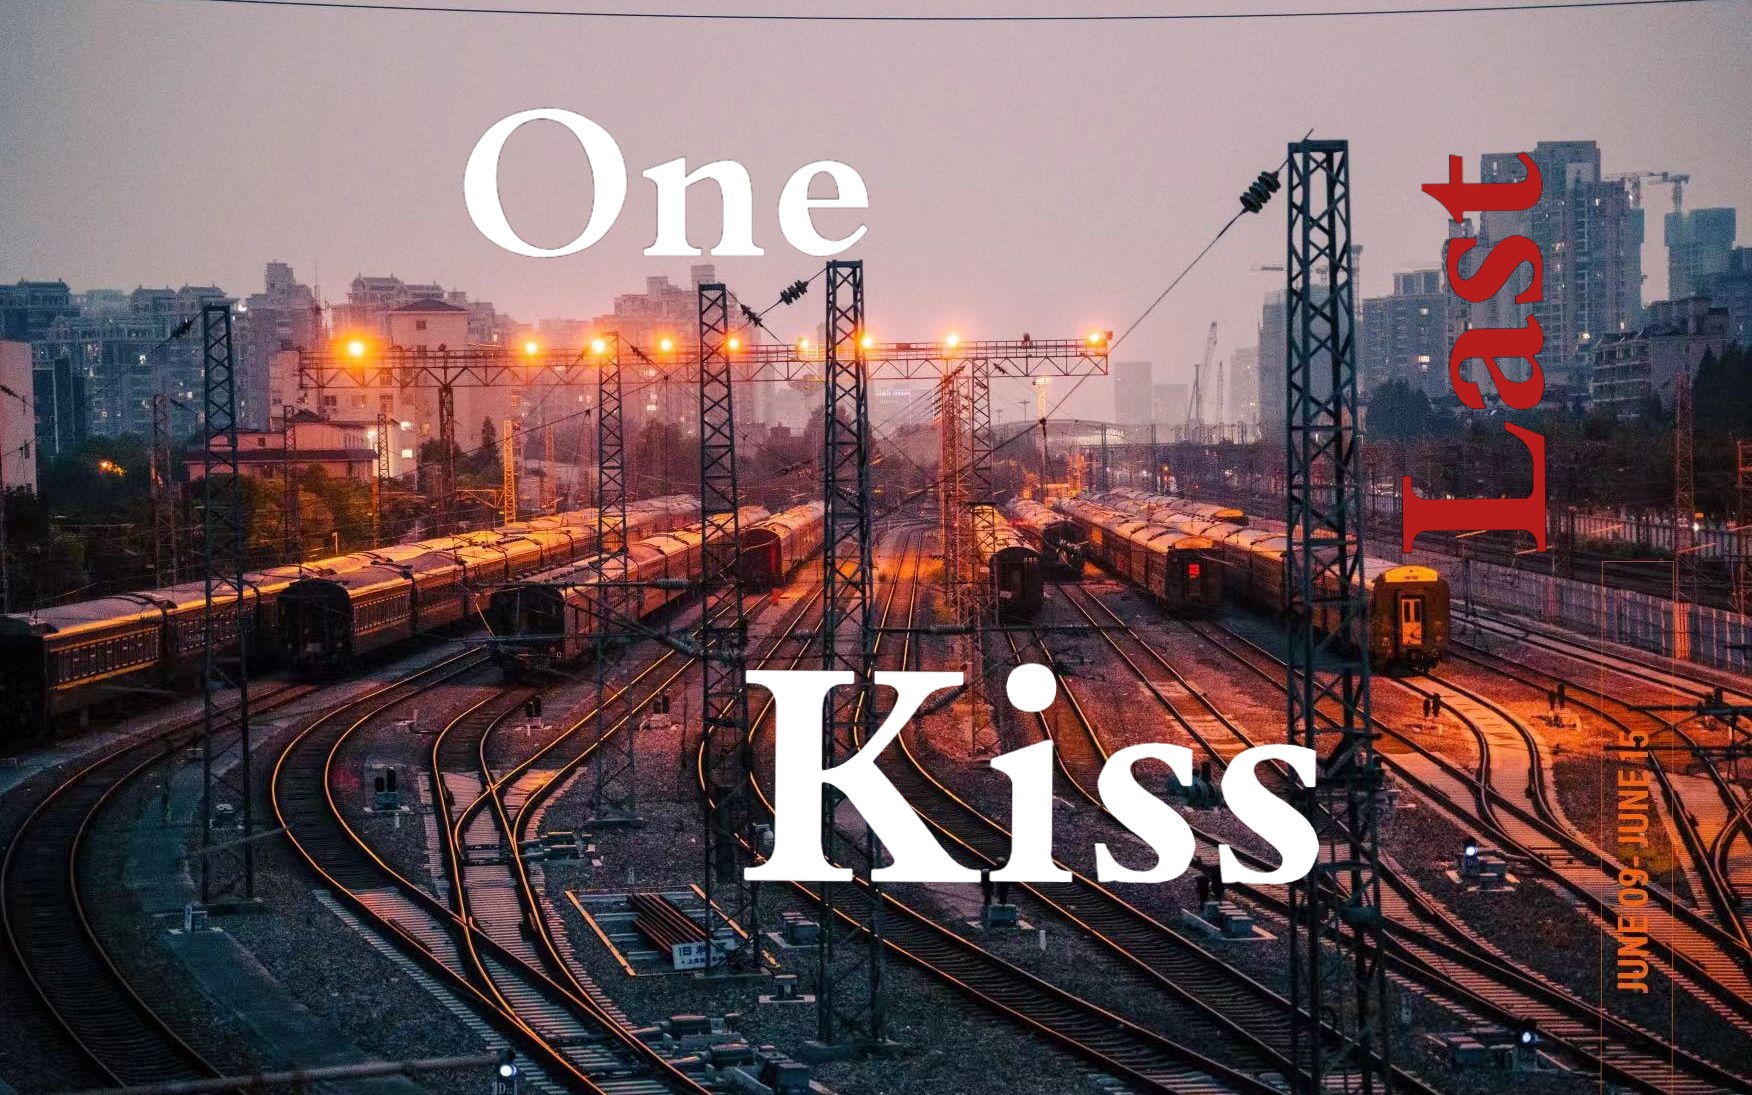 【EVA】One Last Kiss 电线杆子风格剪辑拍摄（卢浮宫区）v3